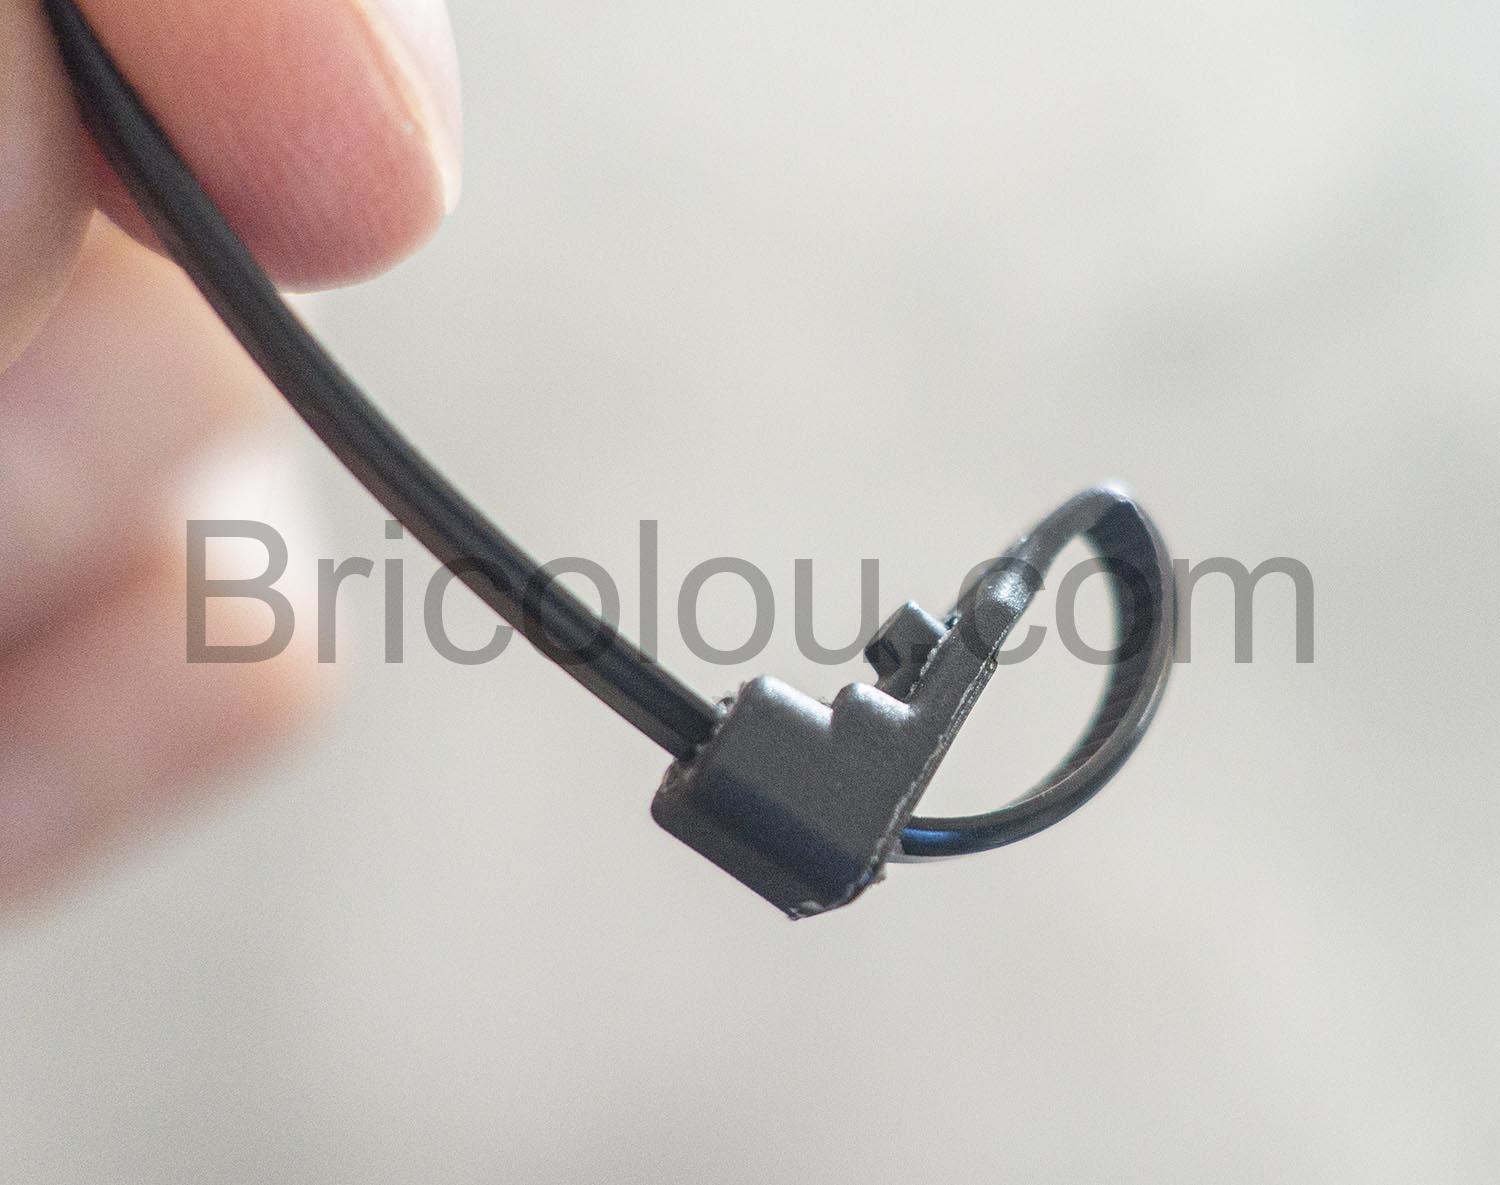 IOXQP serre-câbles 150 x 4 mm Collier de Serrage Réutilisable Plastique  noir PA66